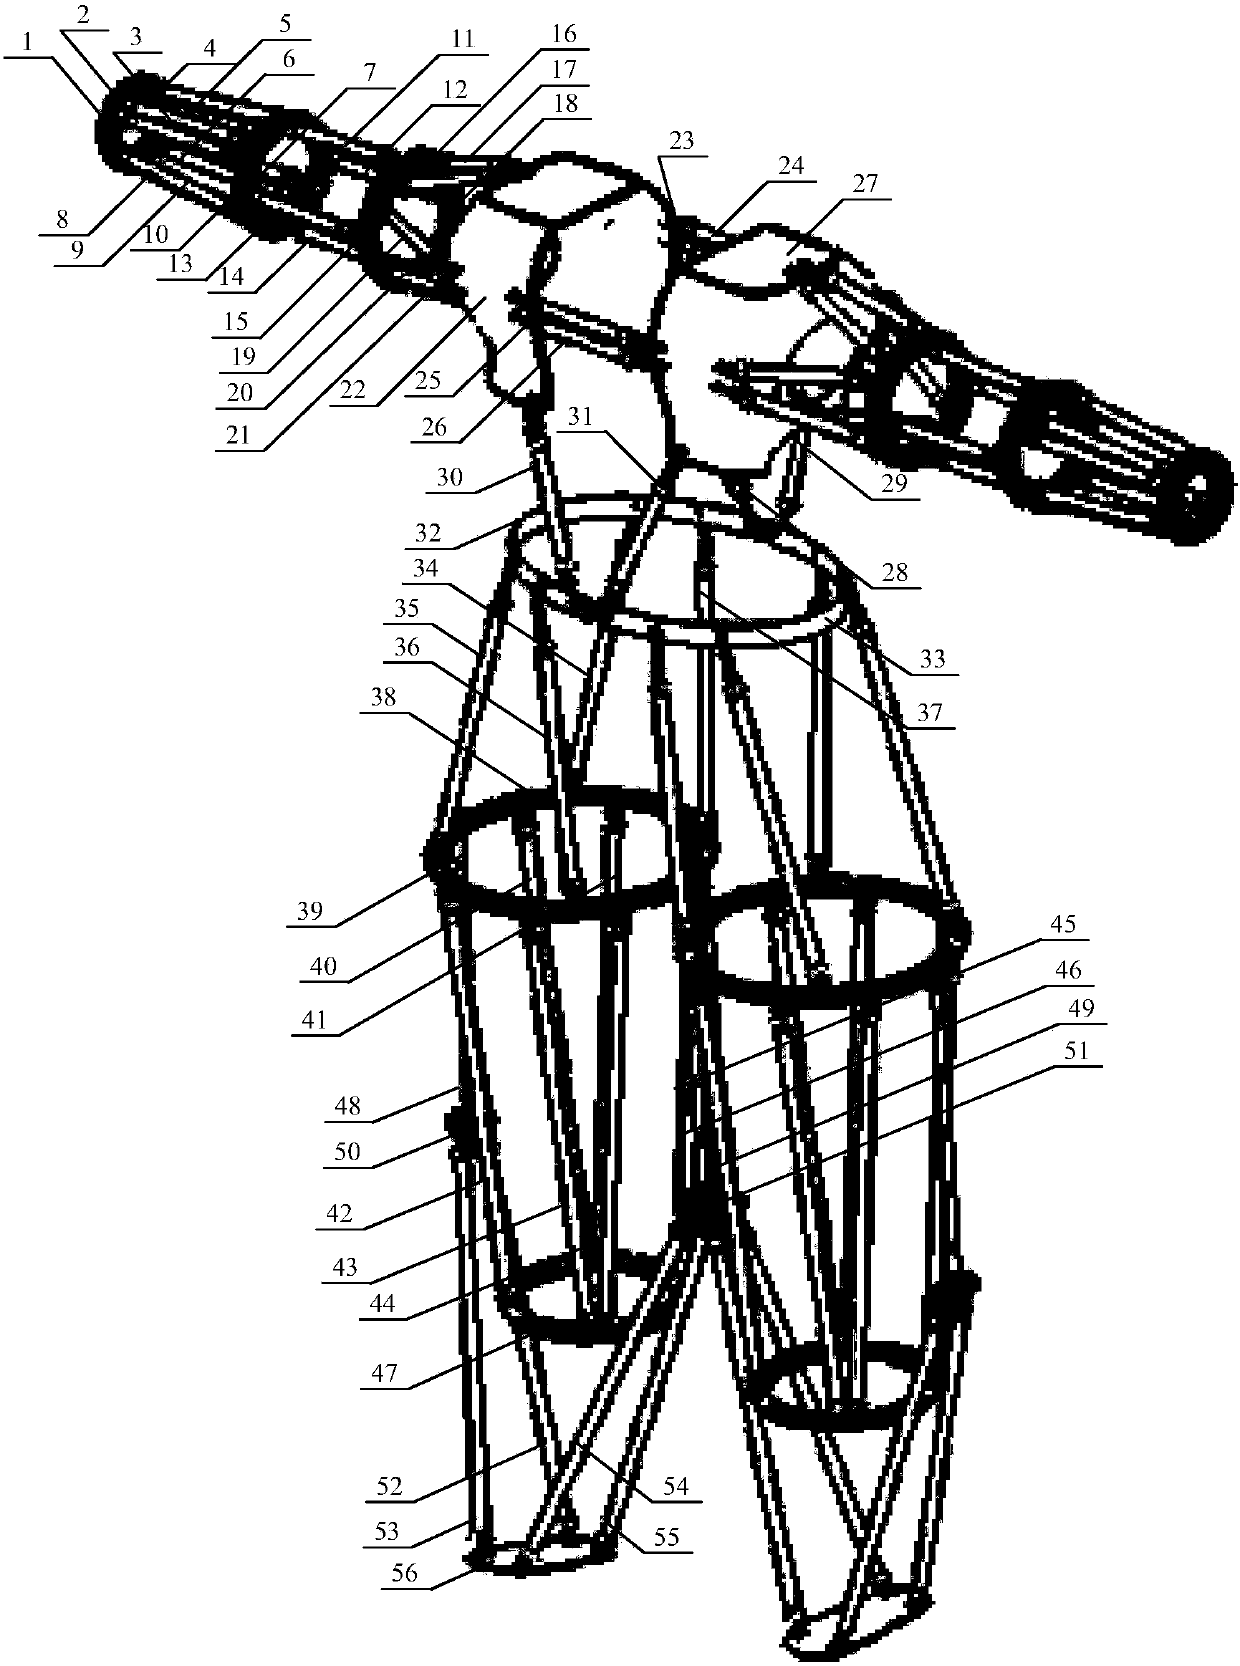 Whole body exoskeleton rehabilitation system based on pneumatic muscles